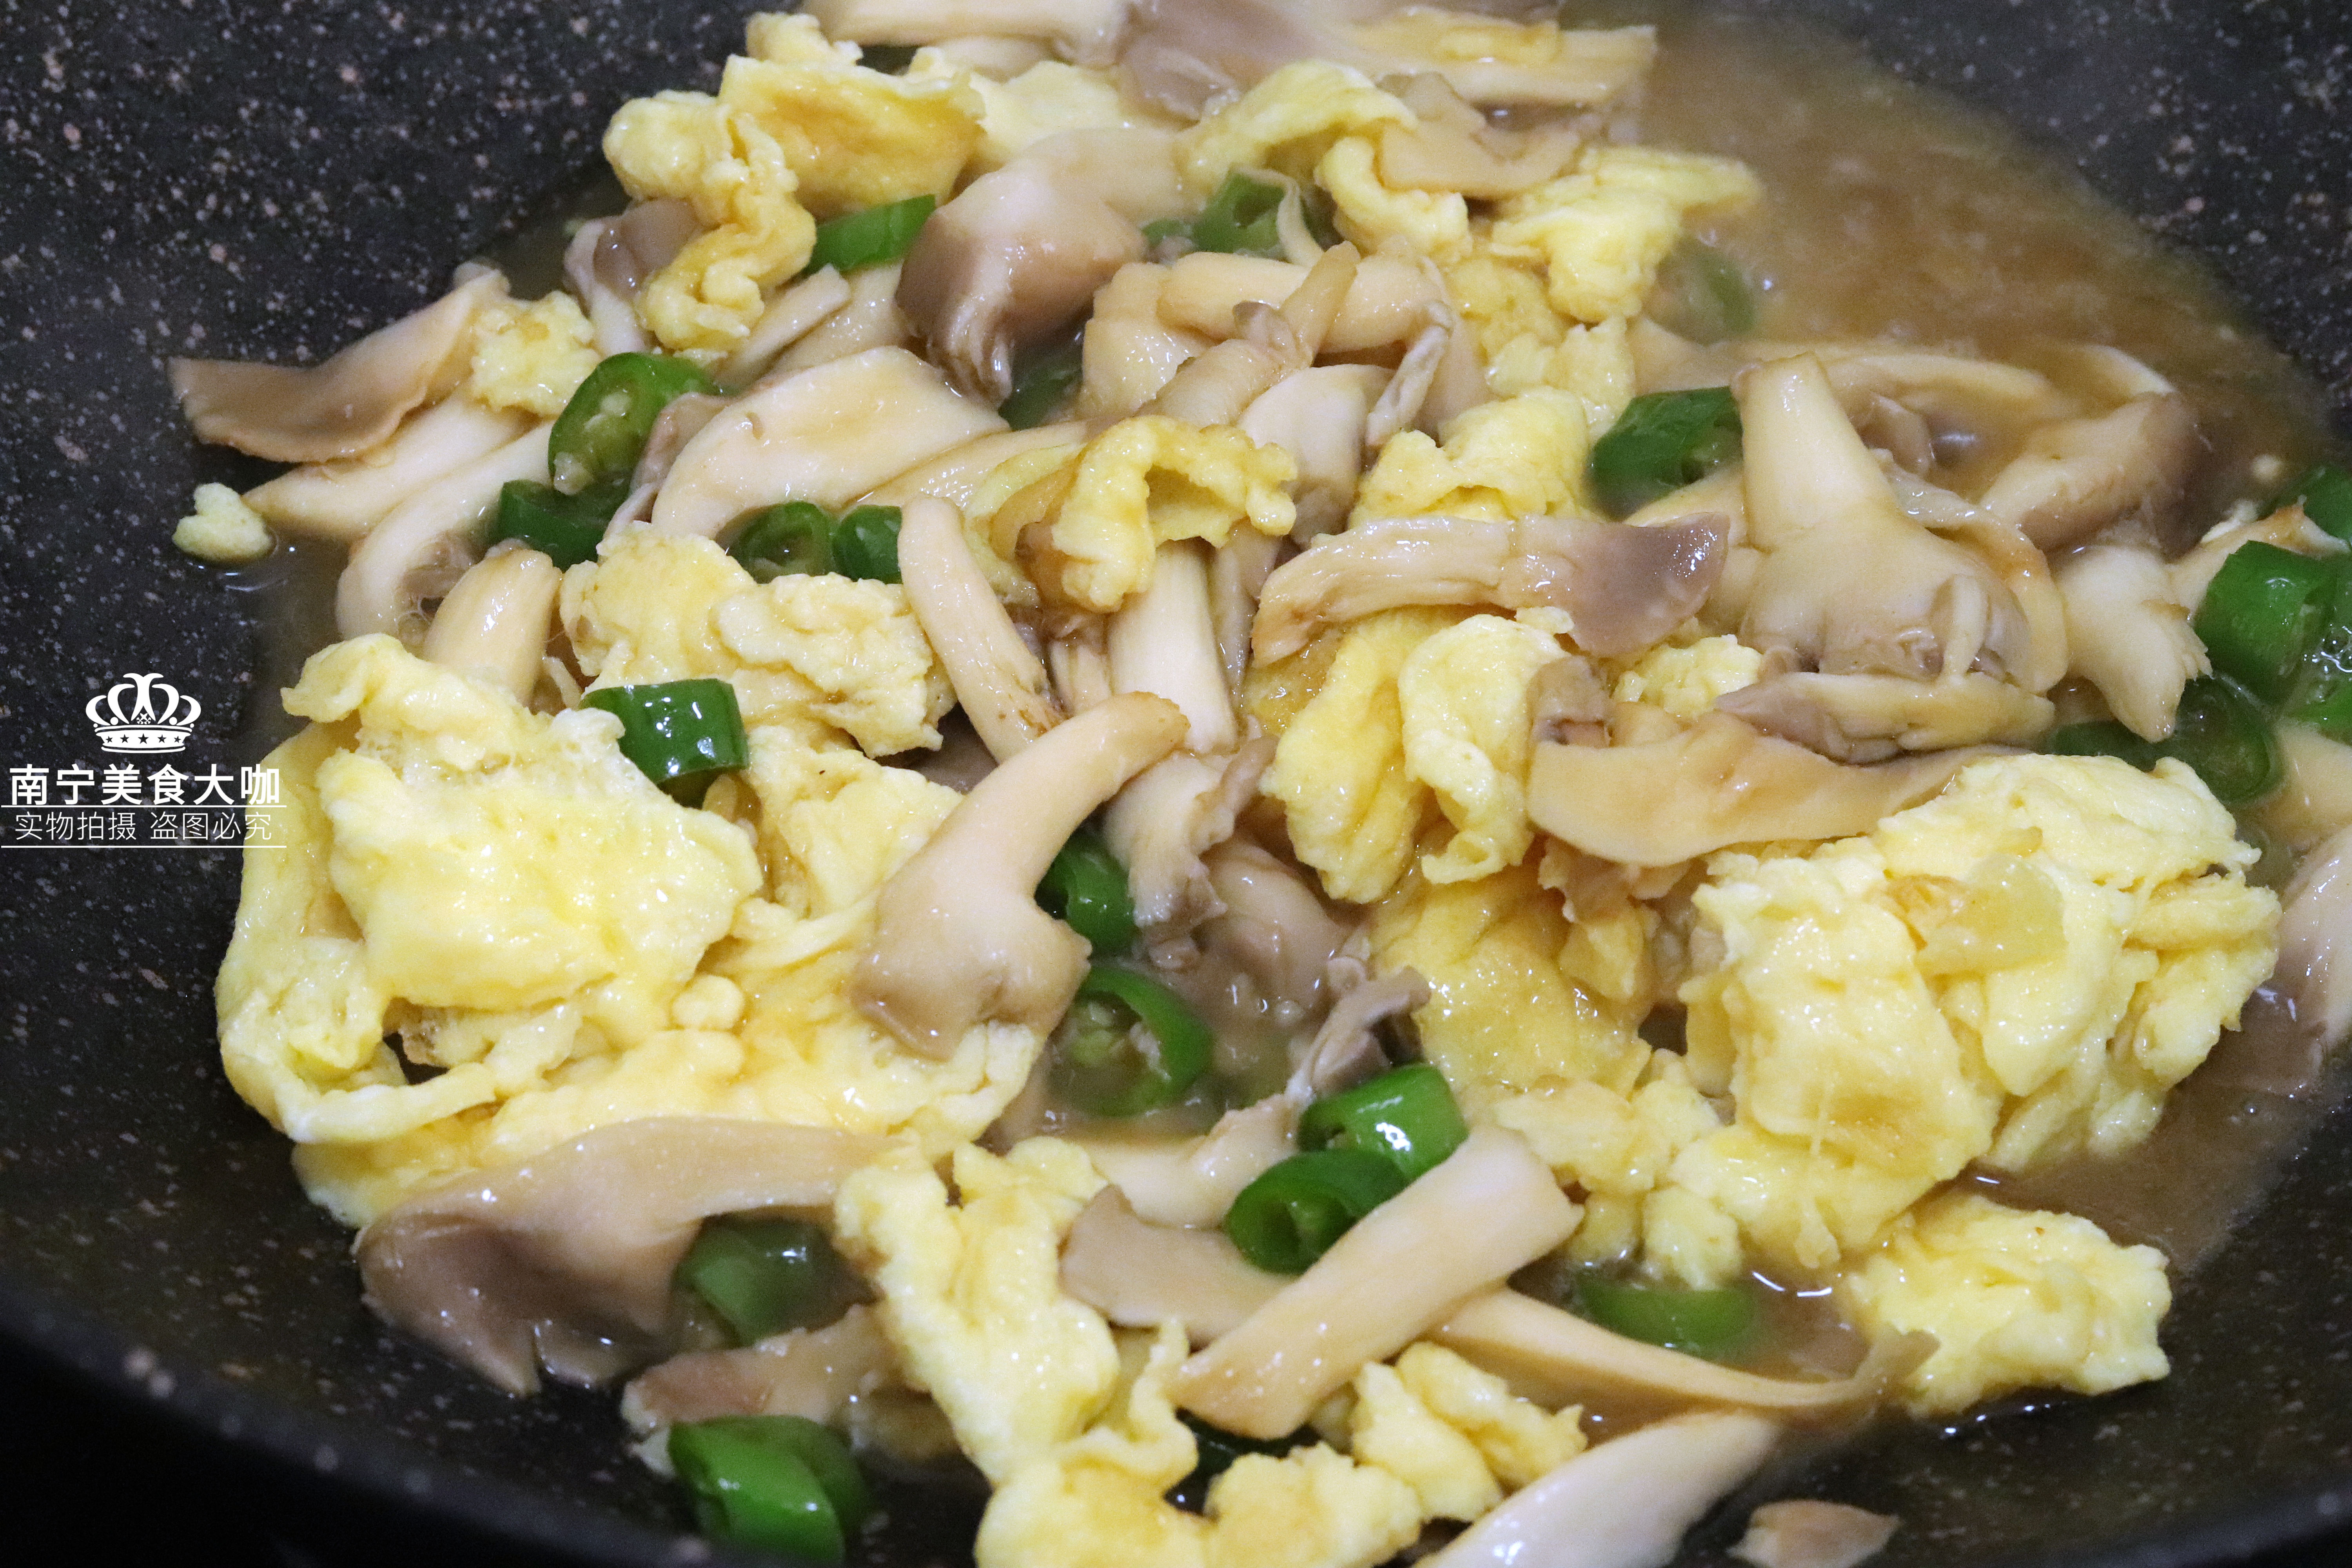 出锅装盘,一盘做法简单又营养美味的平菇炒鸡蛋快手家常菜就做好啦!